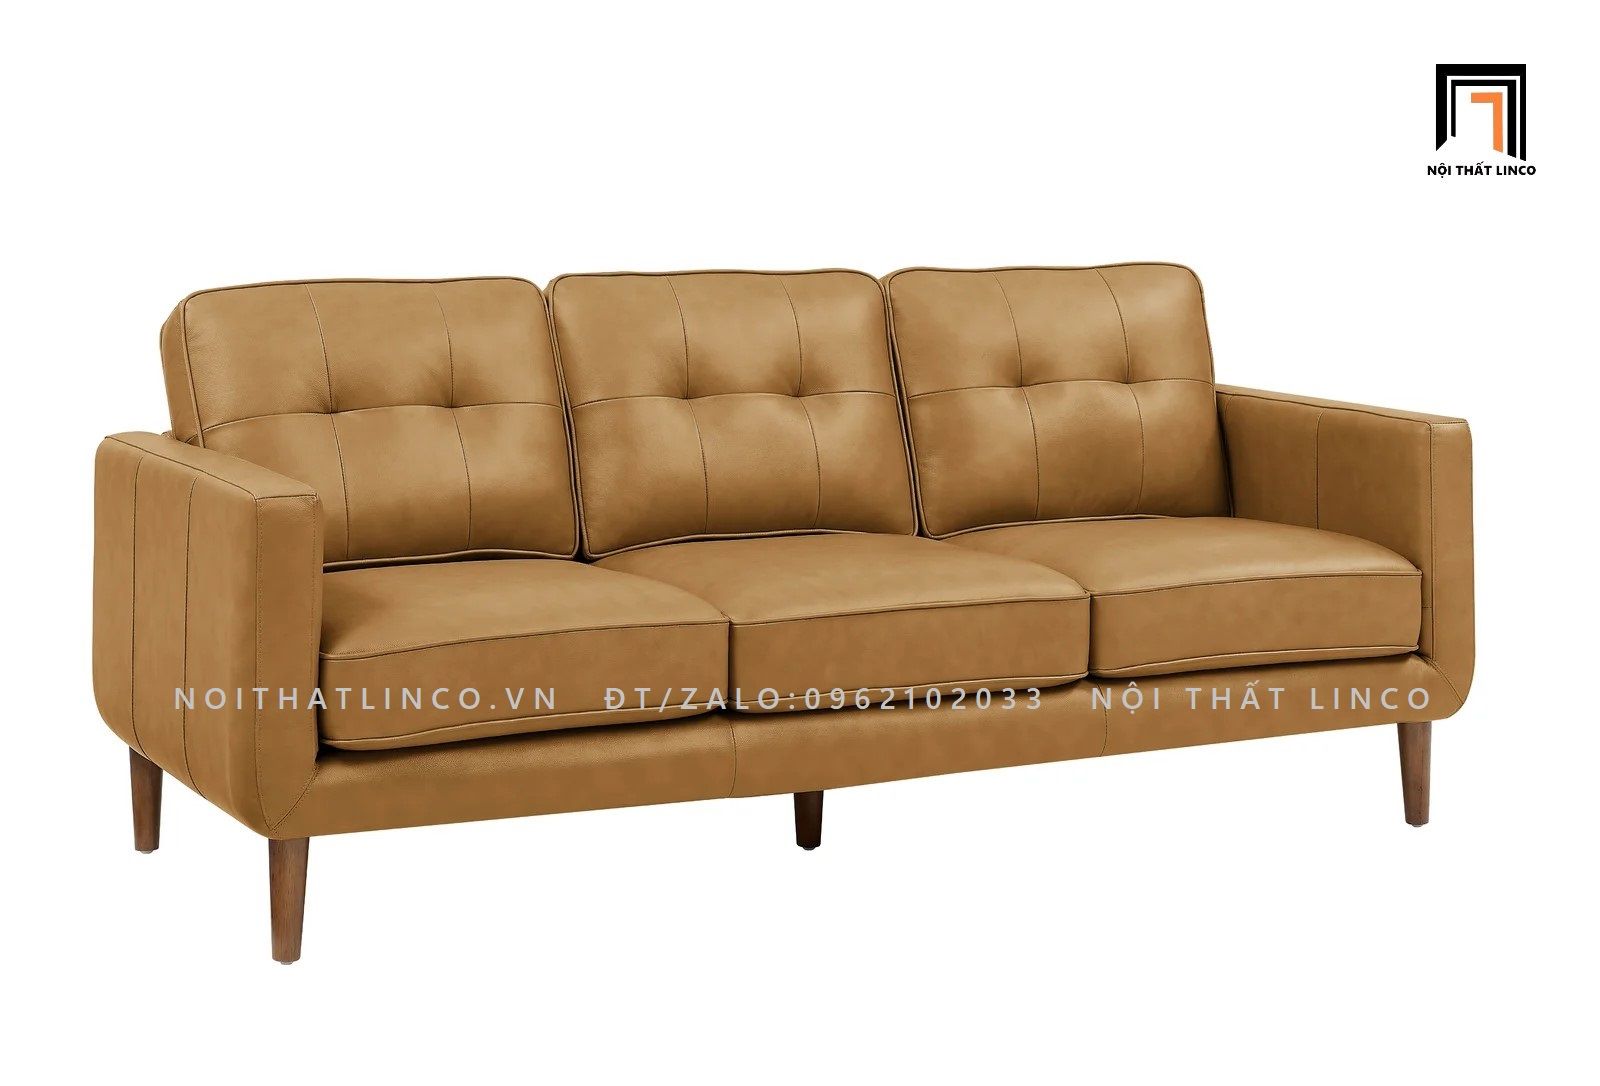  Ghế sofa băng da công nghiệp BT73 Canape 2m hiện đại 